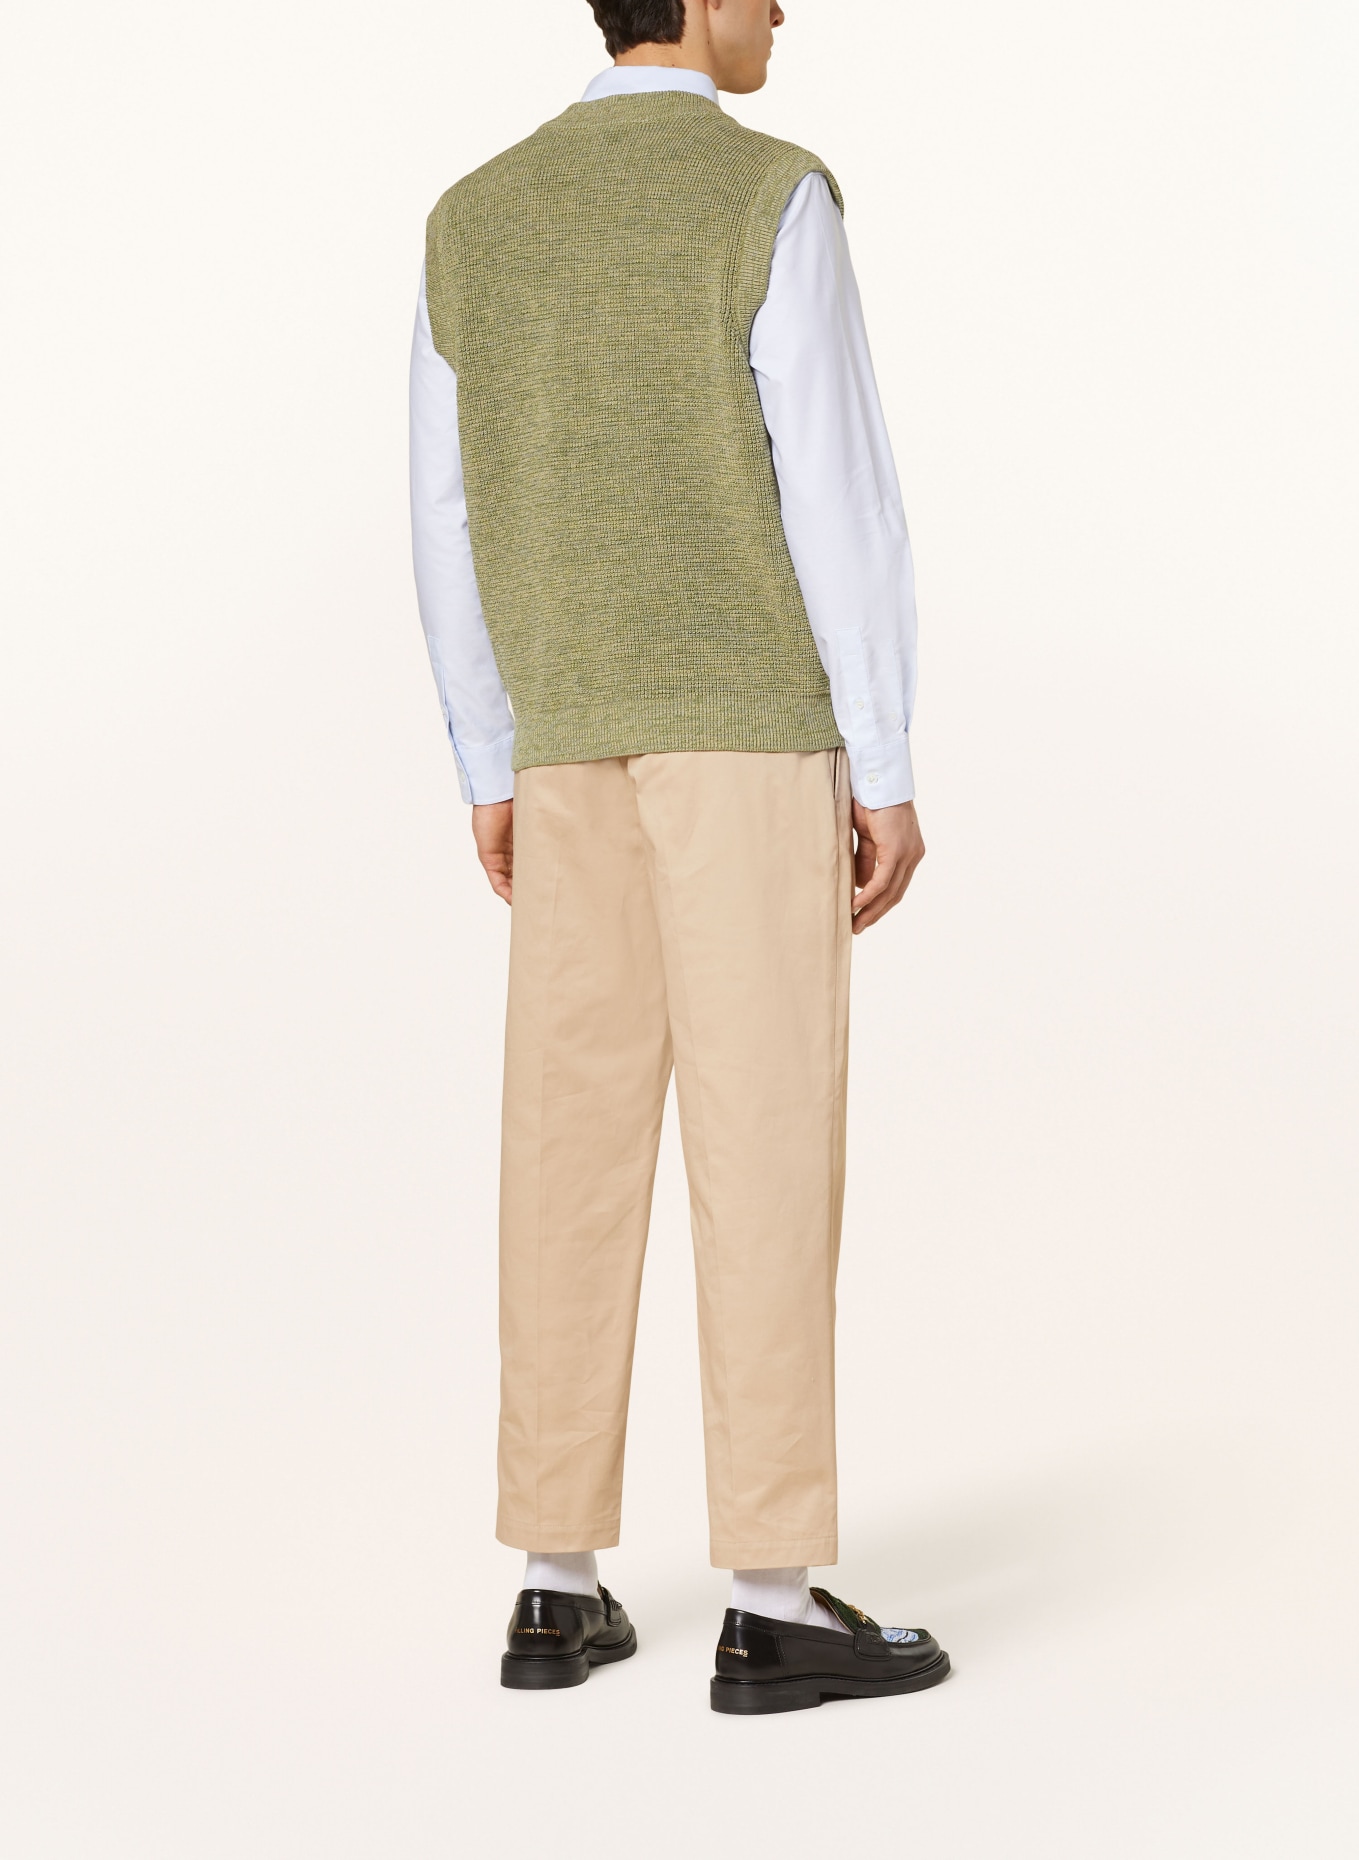 MAISON KITSUNÉ Sweater vest, Color: KHAKI (Image 3)